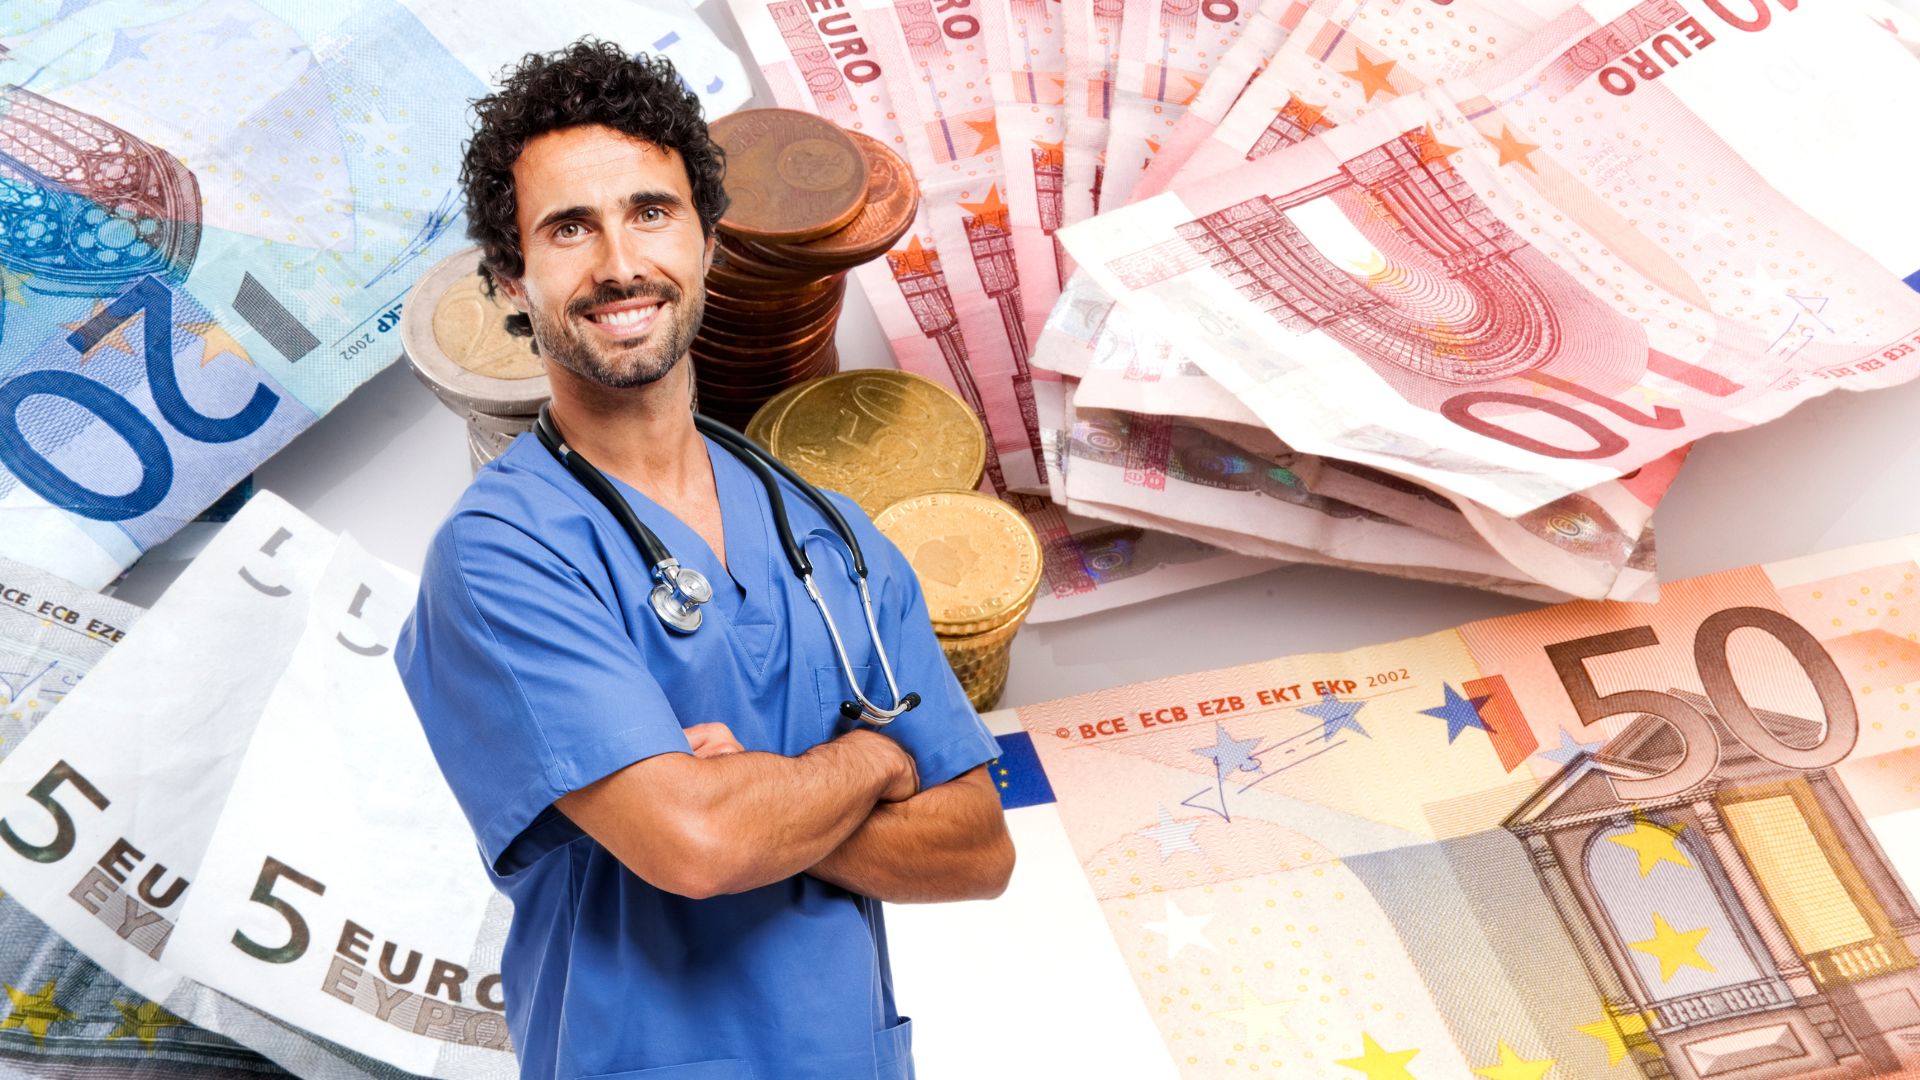 Médecin souriant avec fond d'argent et d'euros.